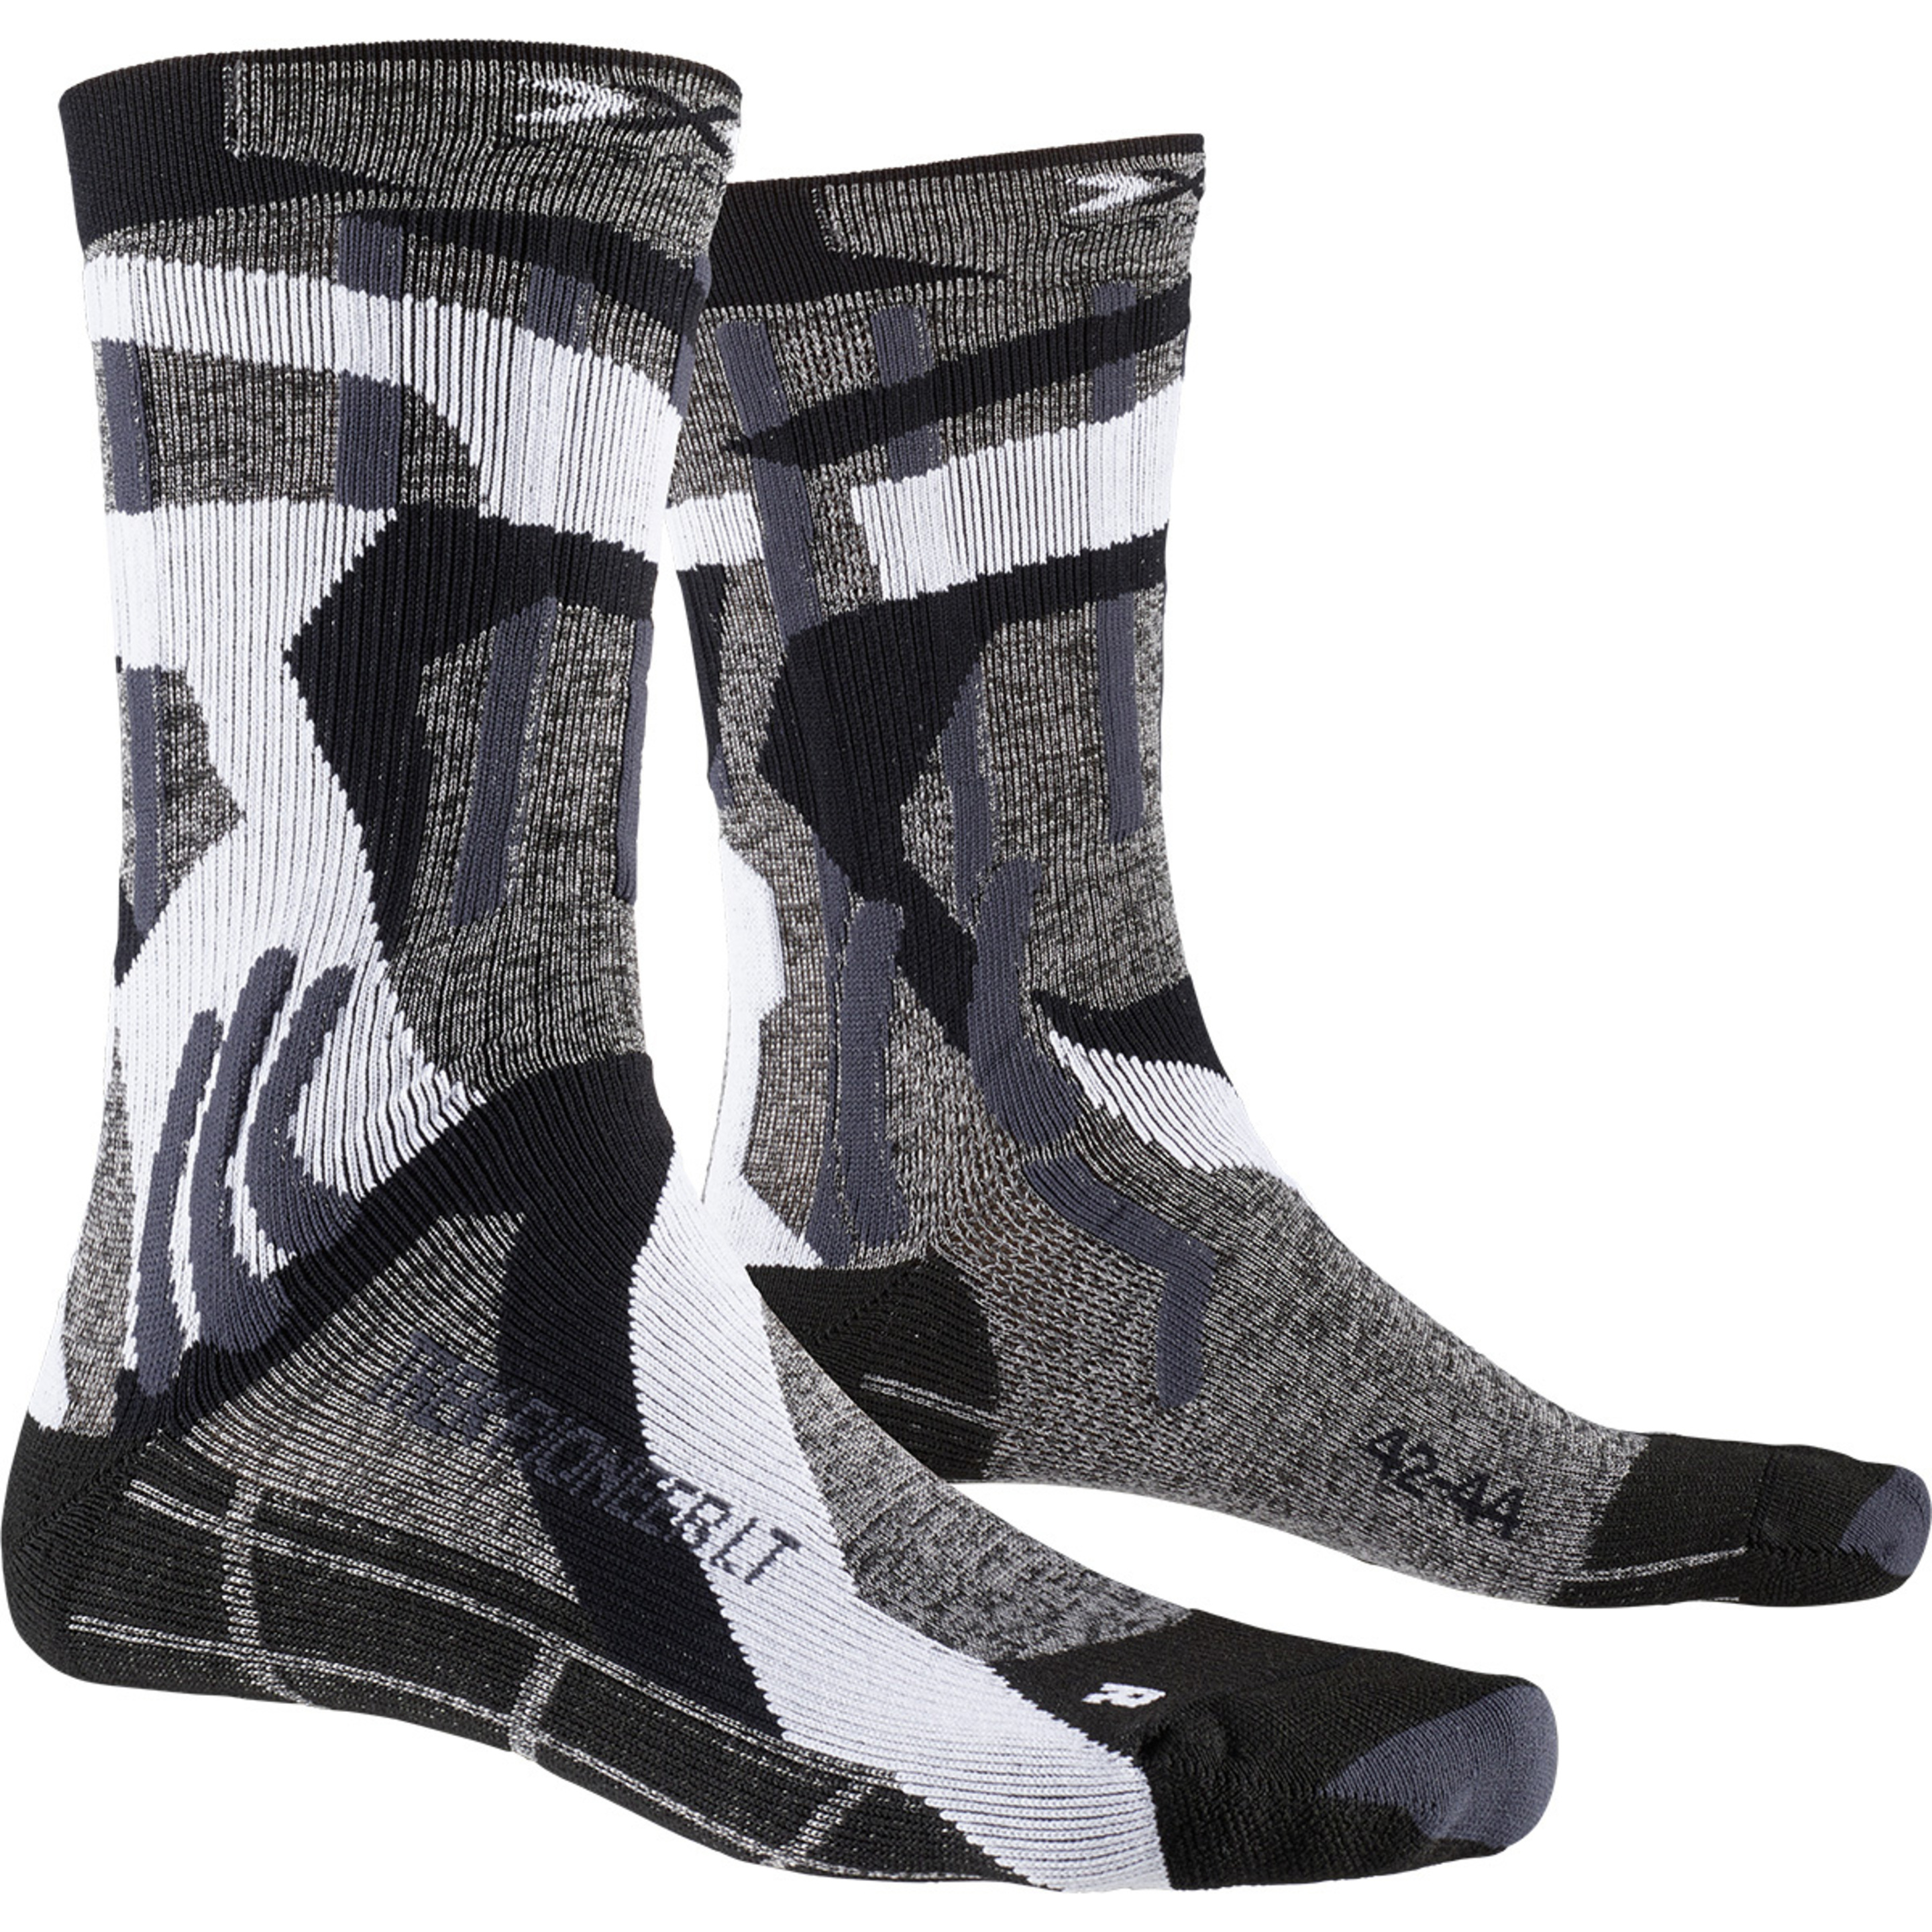 Calcetin Trek Pioneer Lt  X-socks - gris - 